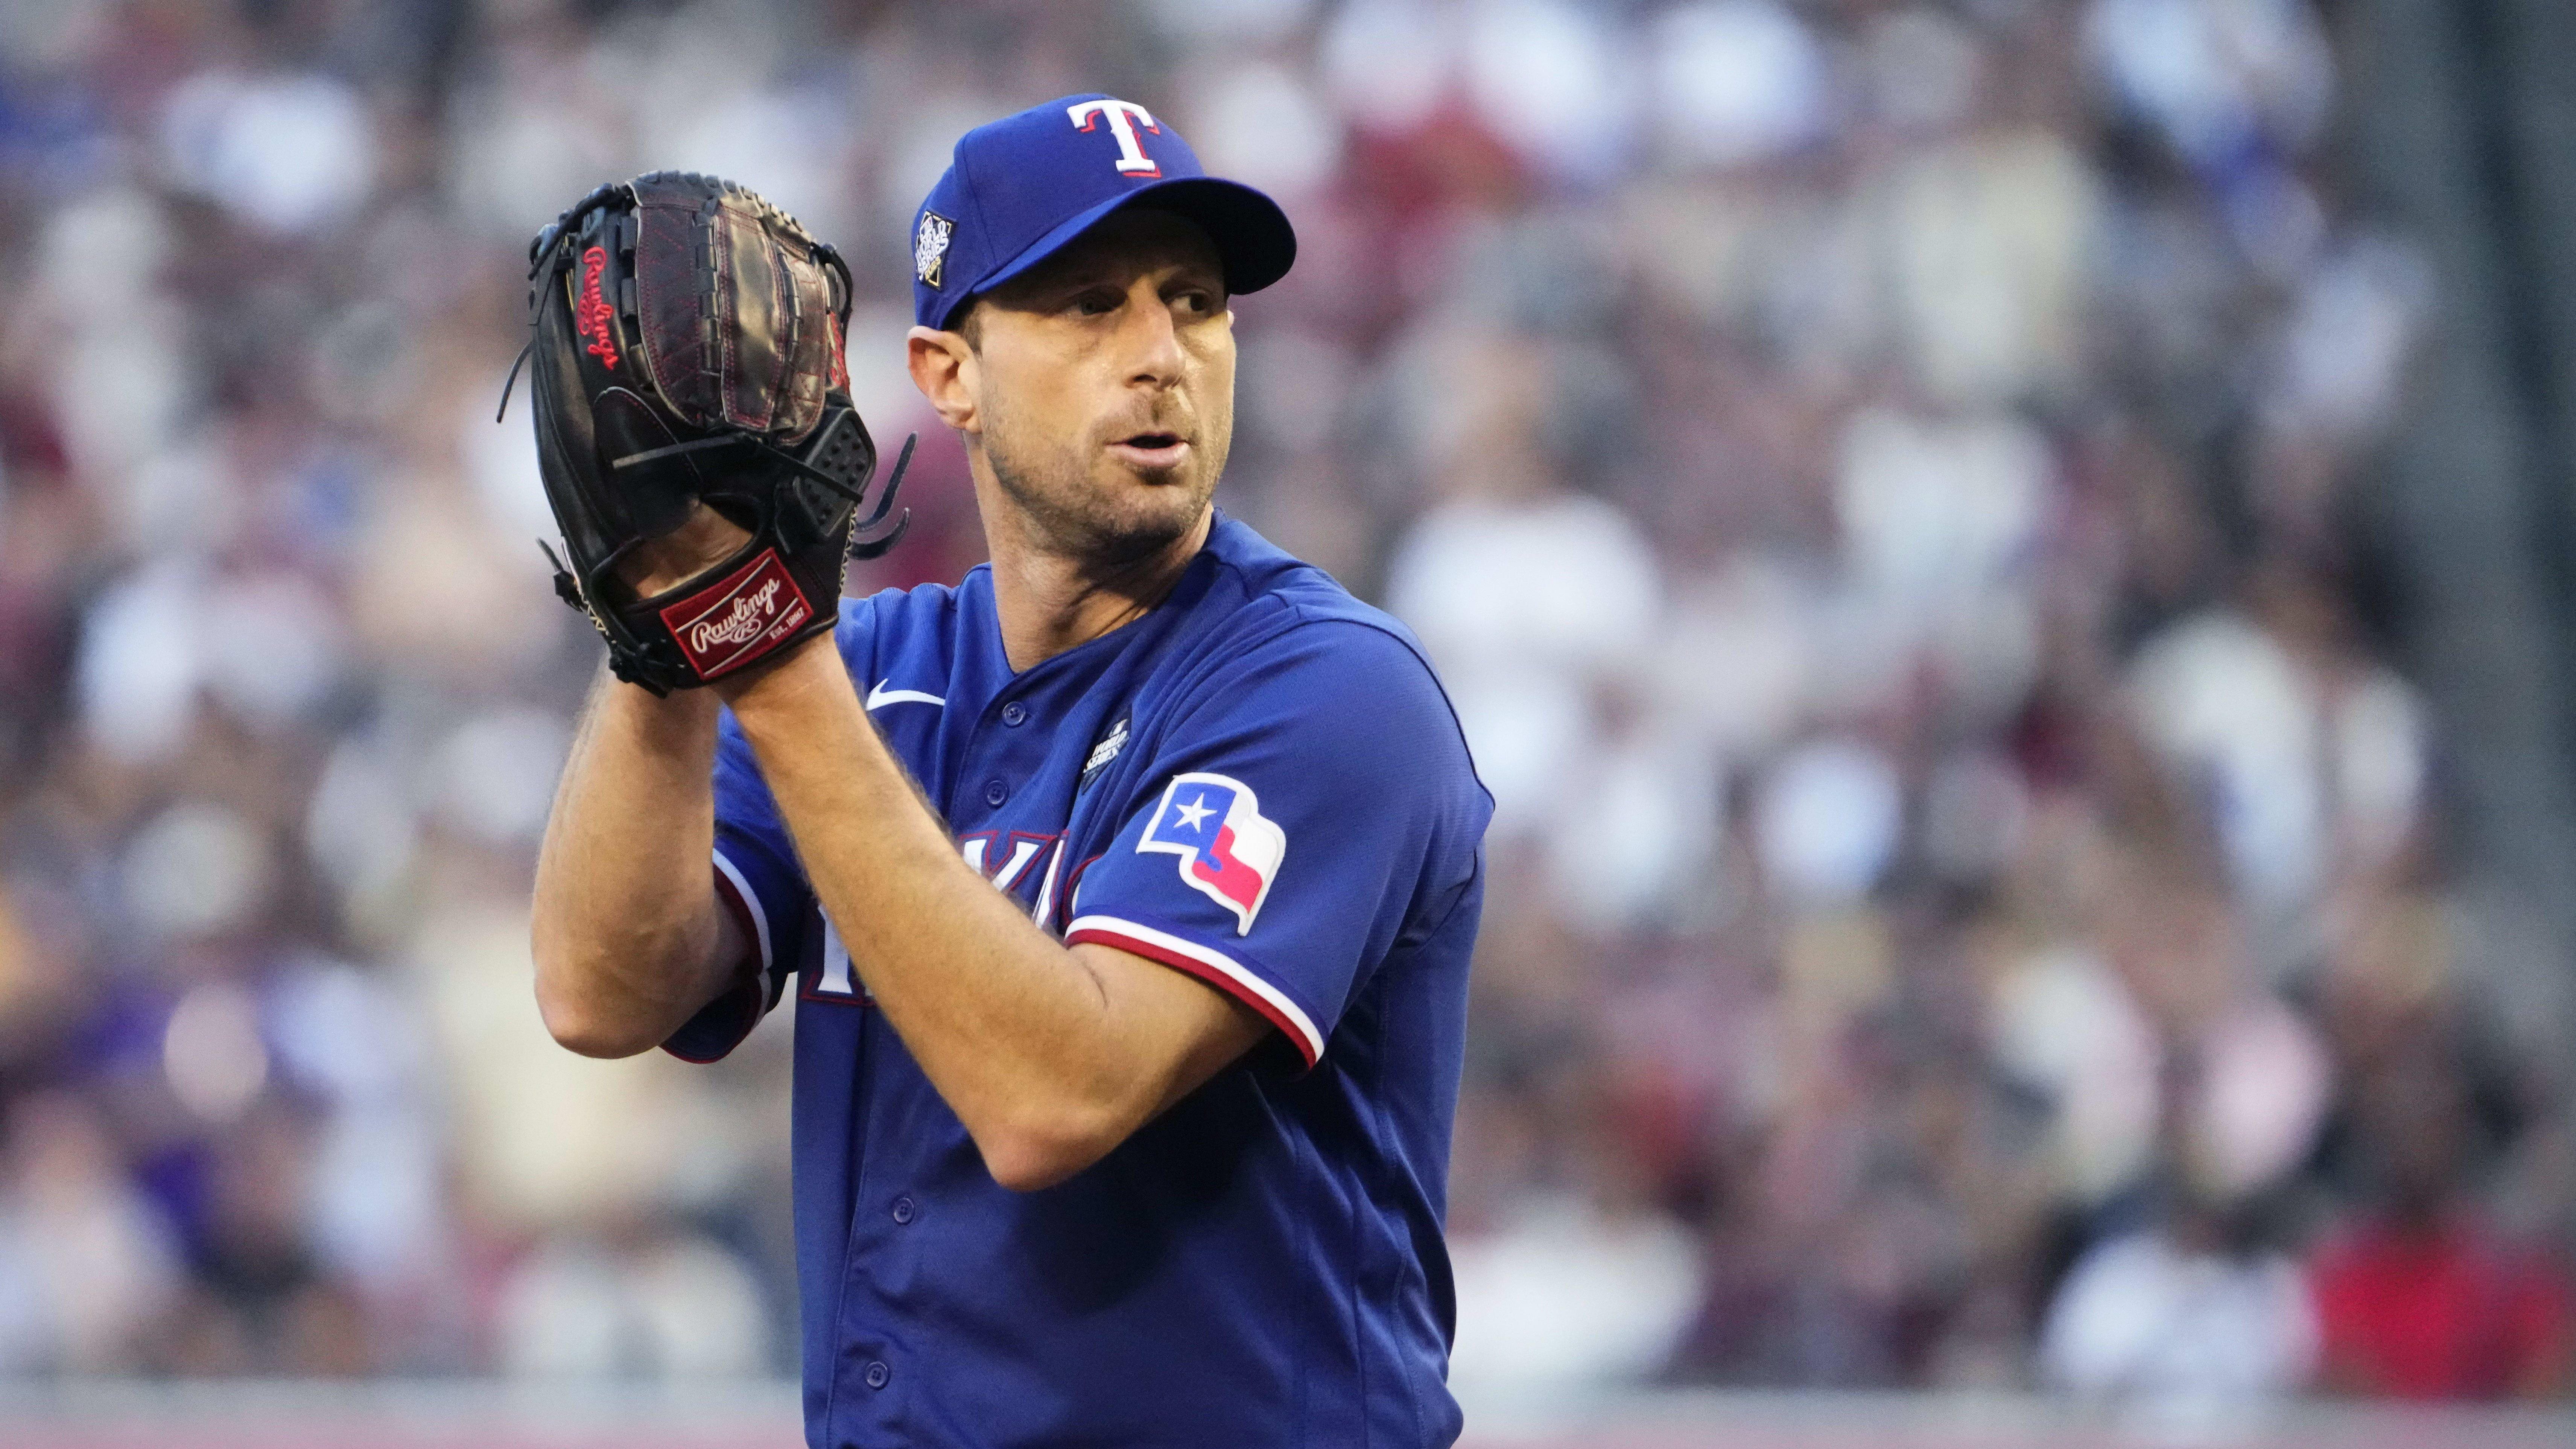 Texas Rangers' Max Scherzer Provides Shocking Injury Update